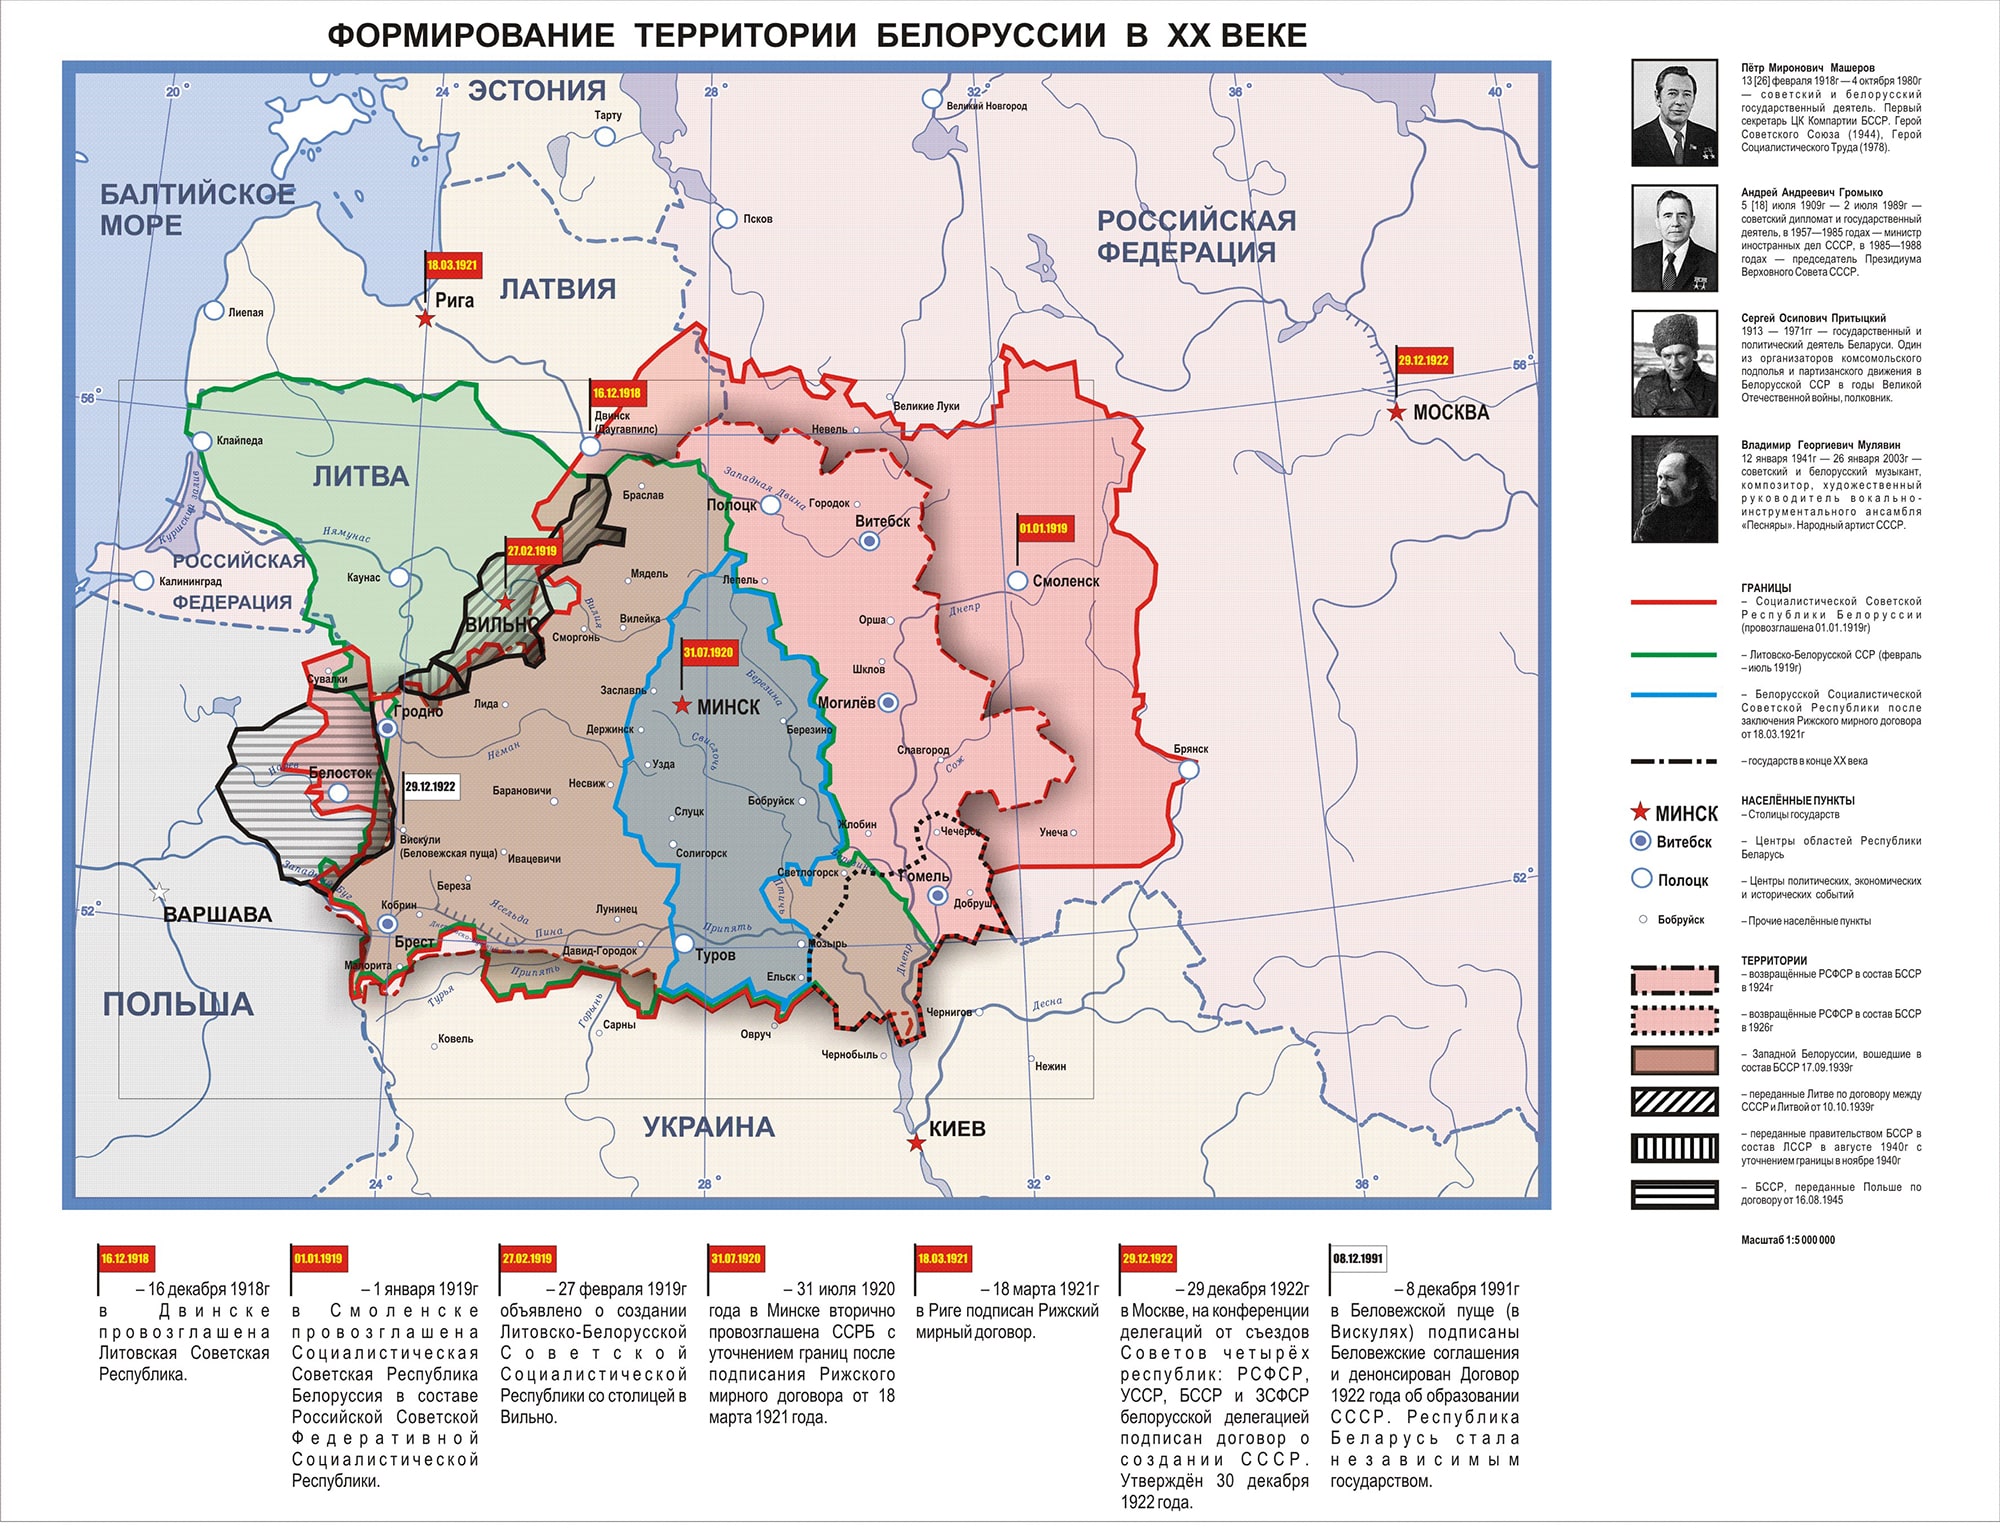 Карта «Формирование территории Республики Беларусь в XX в.»